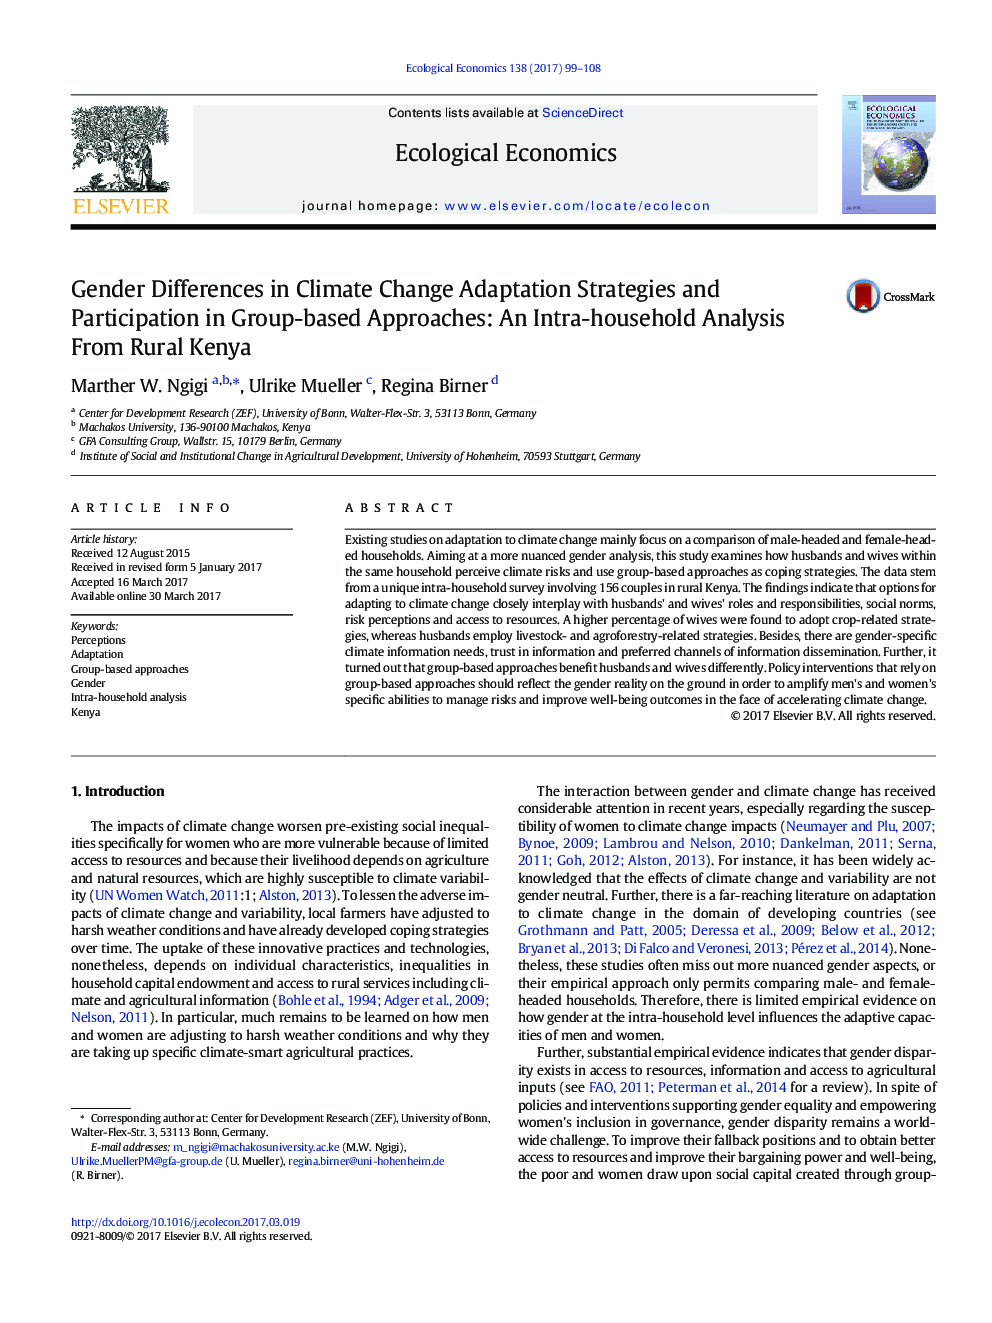 تفاوت های جنسیتی در استراتژی های سازگاری با تغییرات اقلیمی و مشارکت در رویکردهای مبتنی بر گروه: تجزیه و تحلیل درون خانواده از کنیا روستایی 